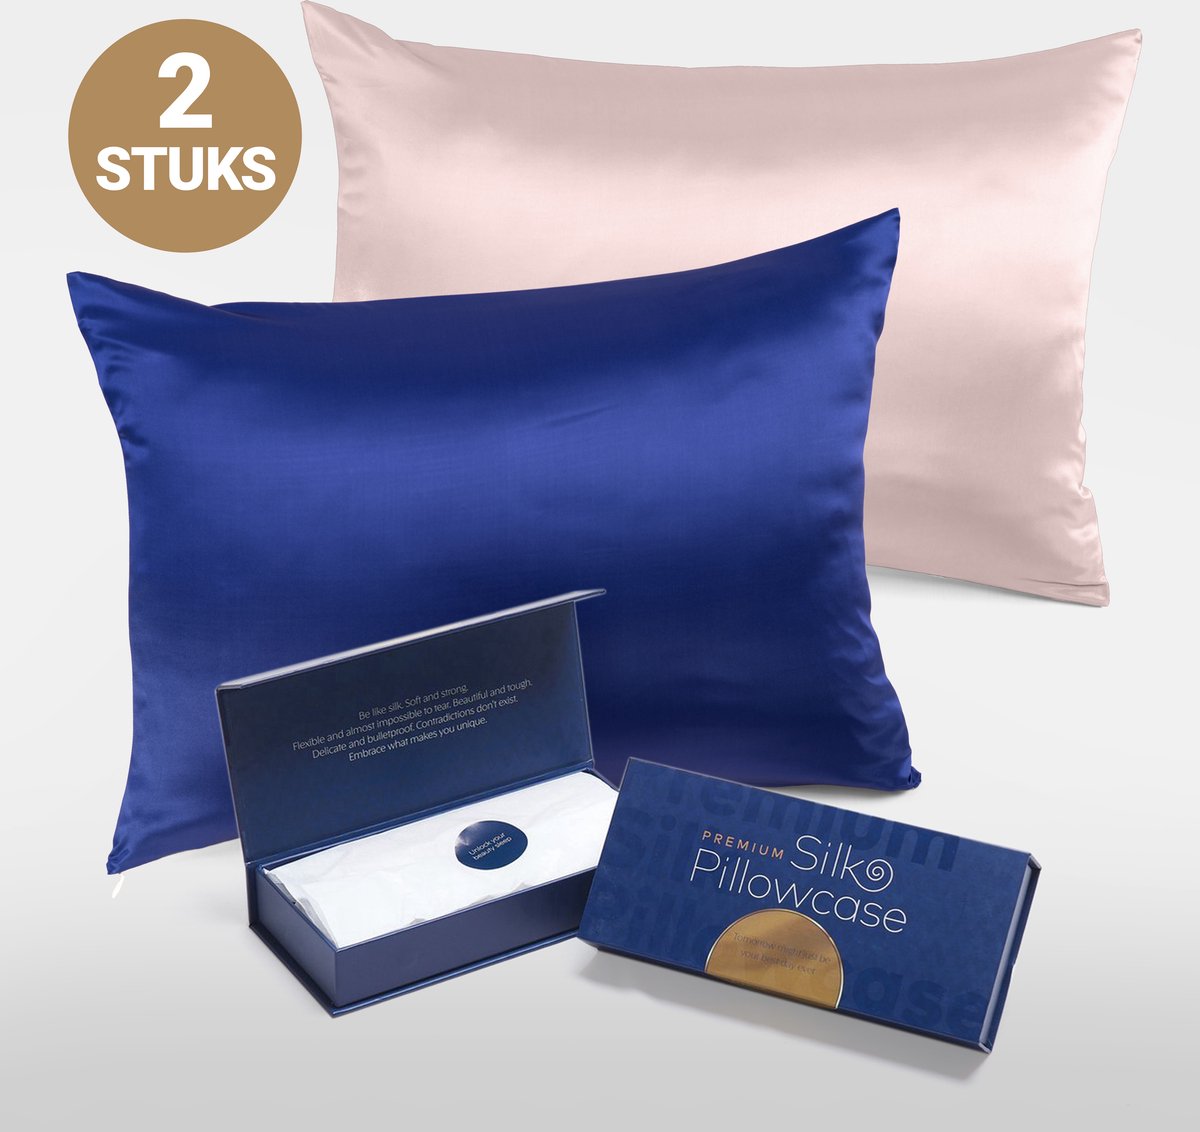 Slowwave Premium Silk Pillowcase - Extra voordelig colorpack: Cloud Burst (blauw) en Pink Swan (lichtroze) - Ervaar het beste zijden kussensloop - 100% Mulberry zijde - 22 momme - Hoogste kwaliteit (grade 6A) - 60x70cm